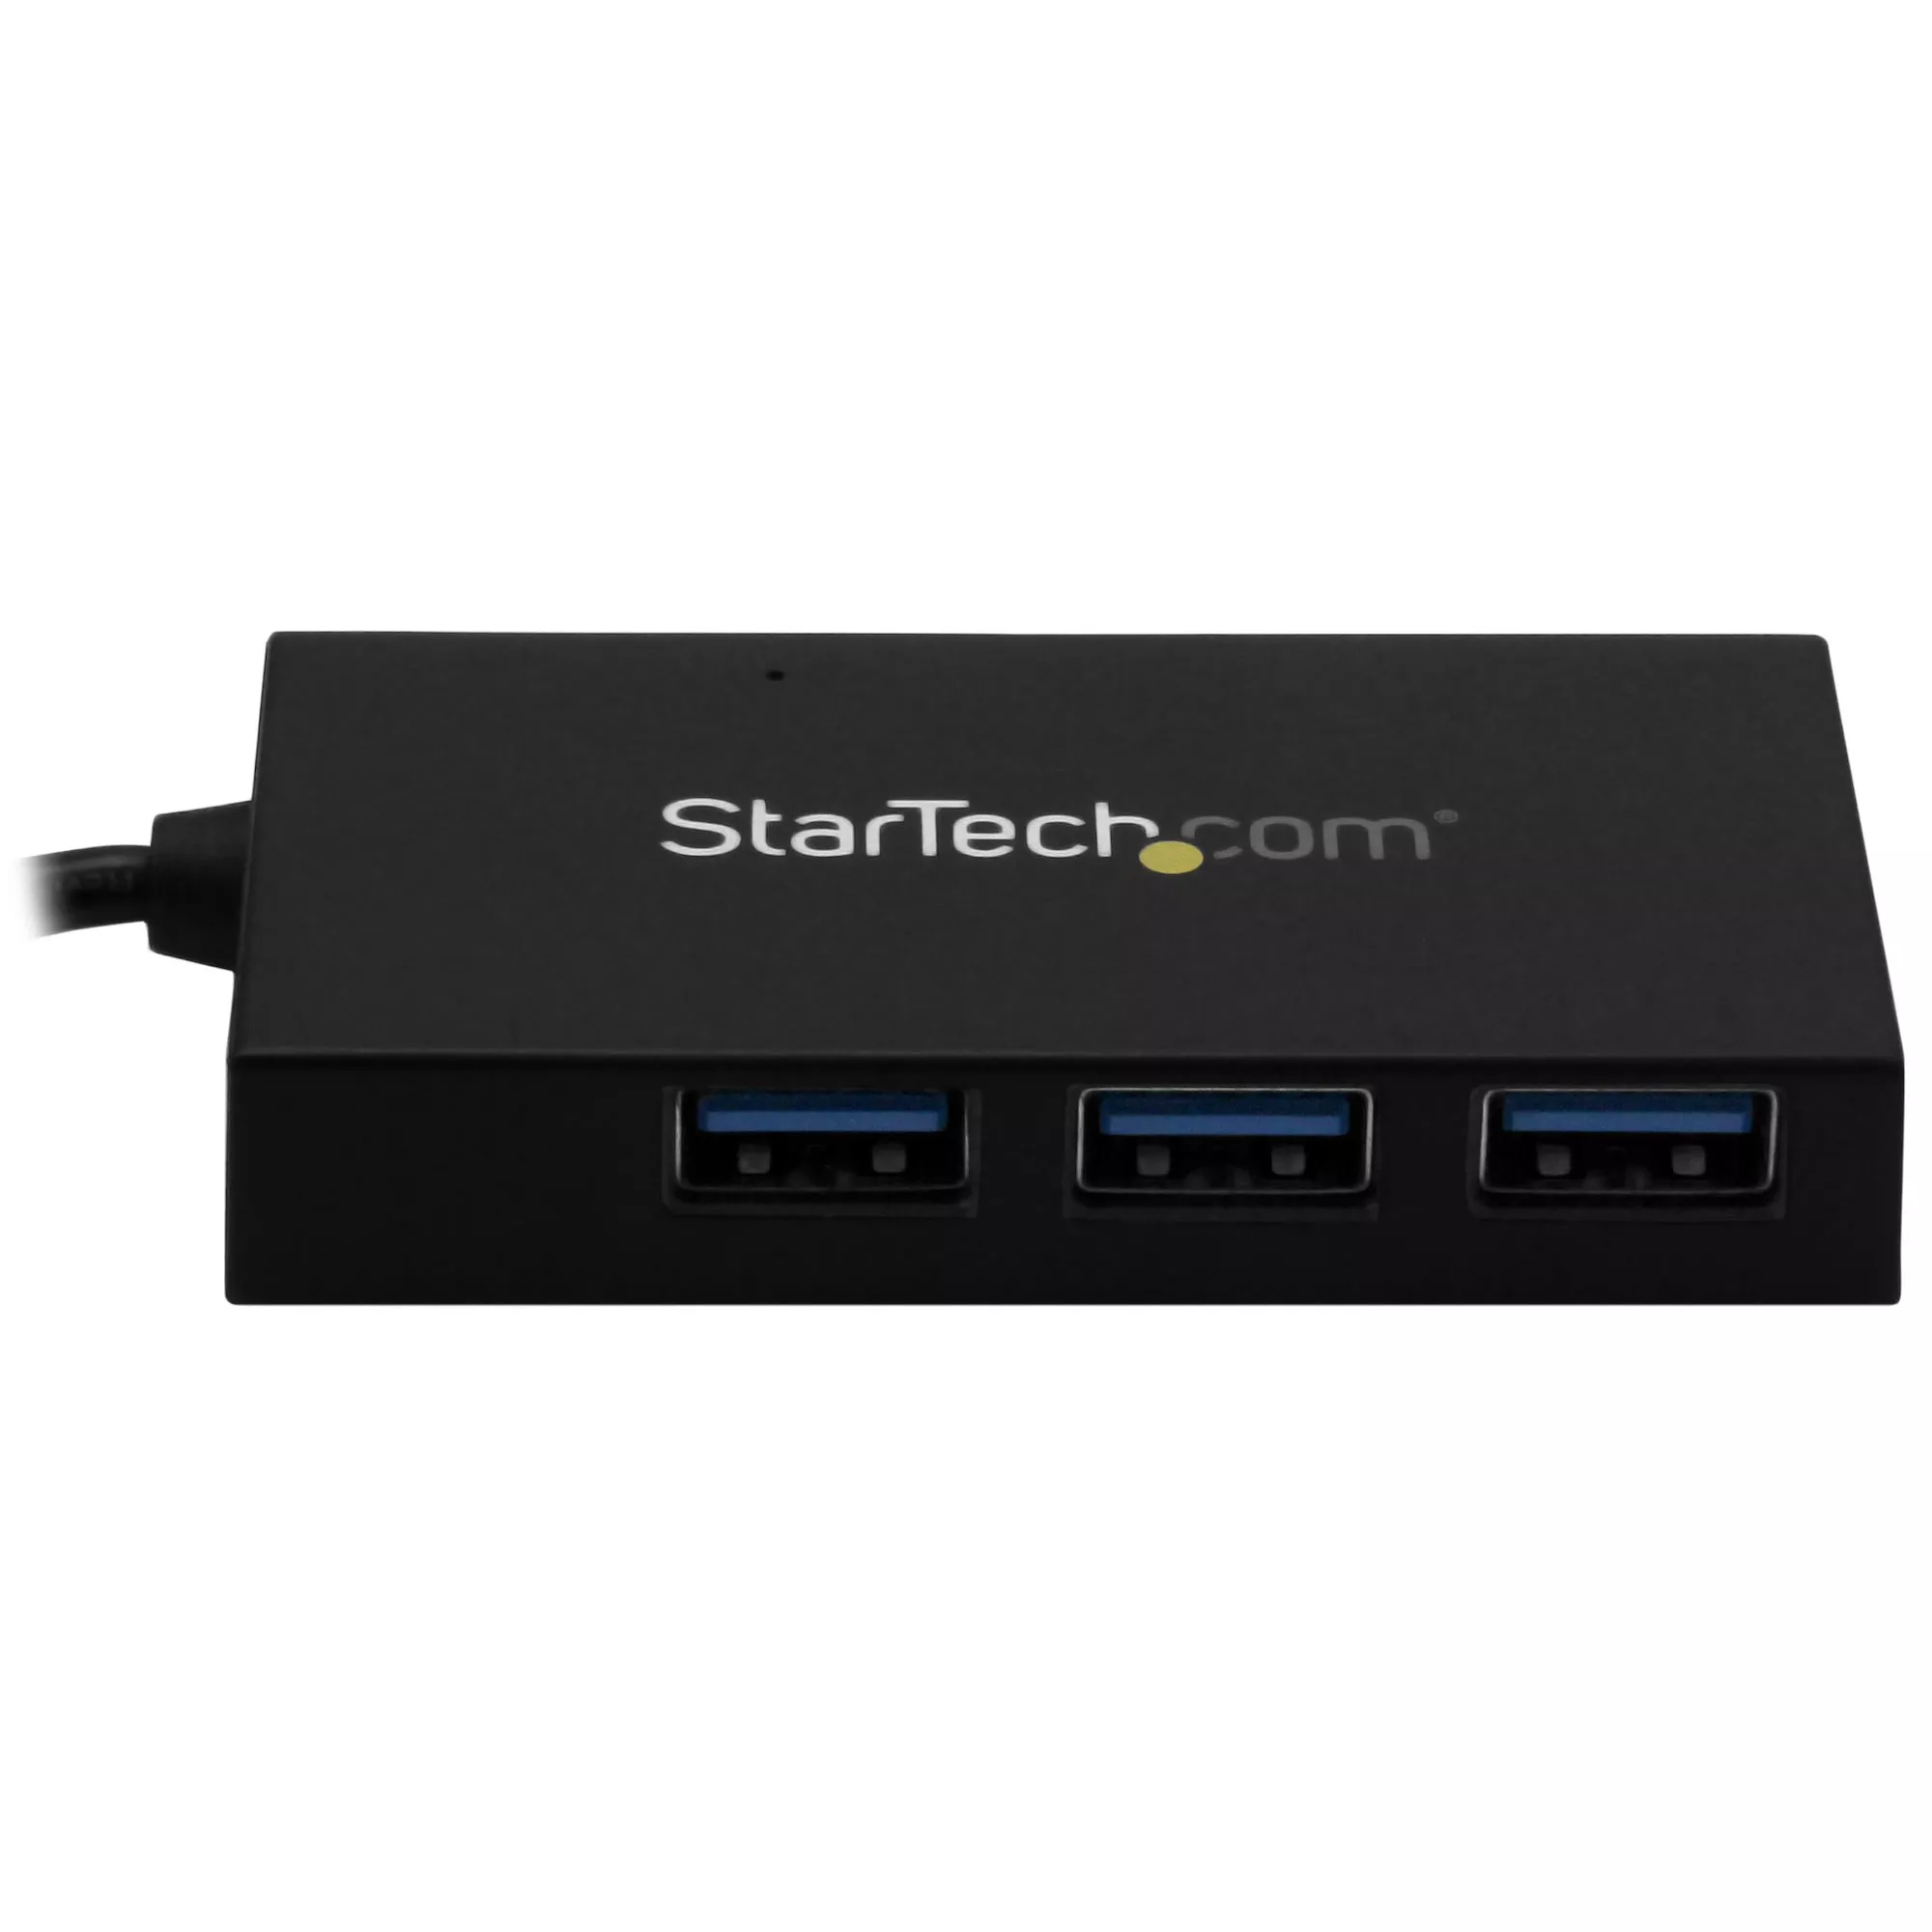 Achat StarTech.com Hub USB 3.0 4 Ports - Hub sur hello RSE - visuel 3